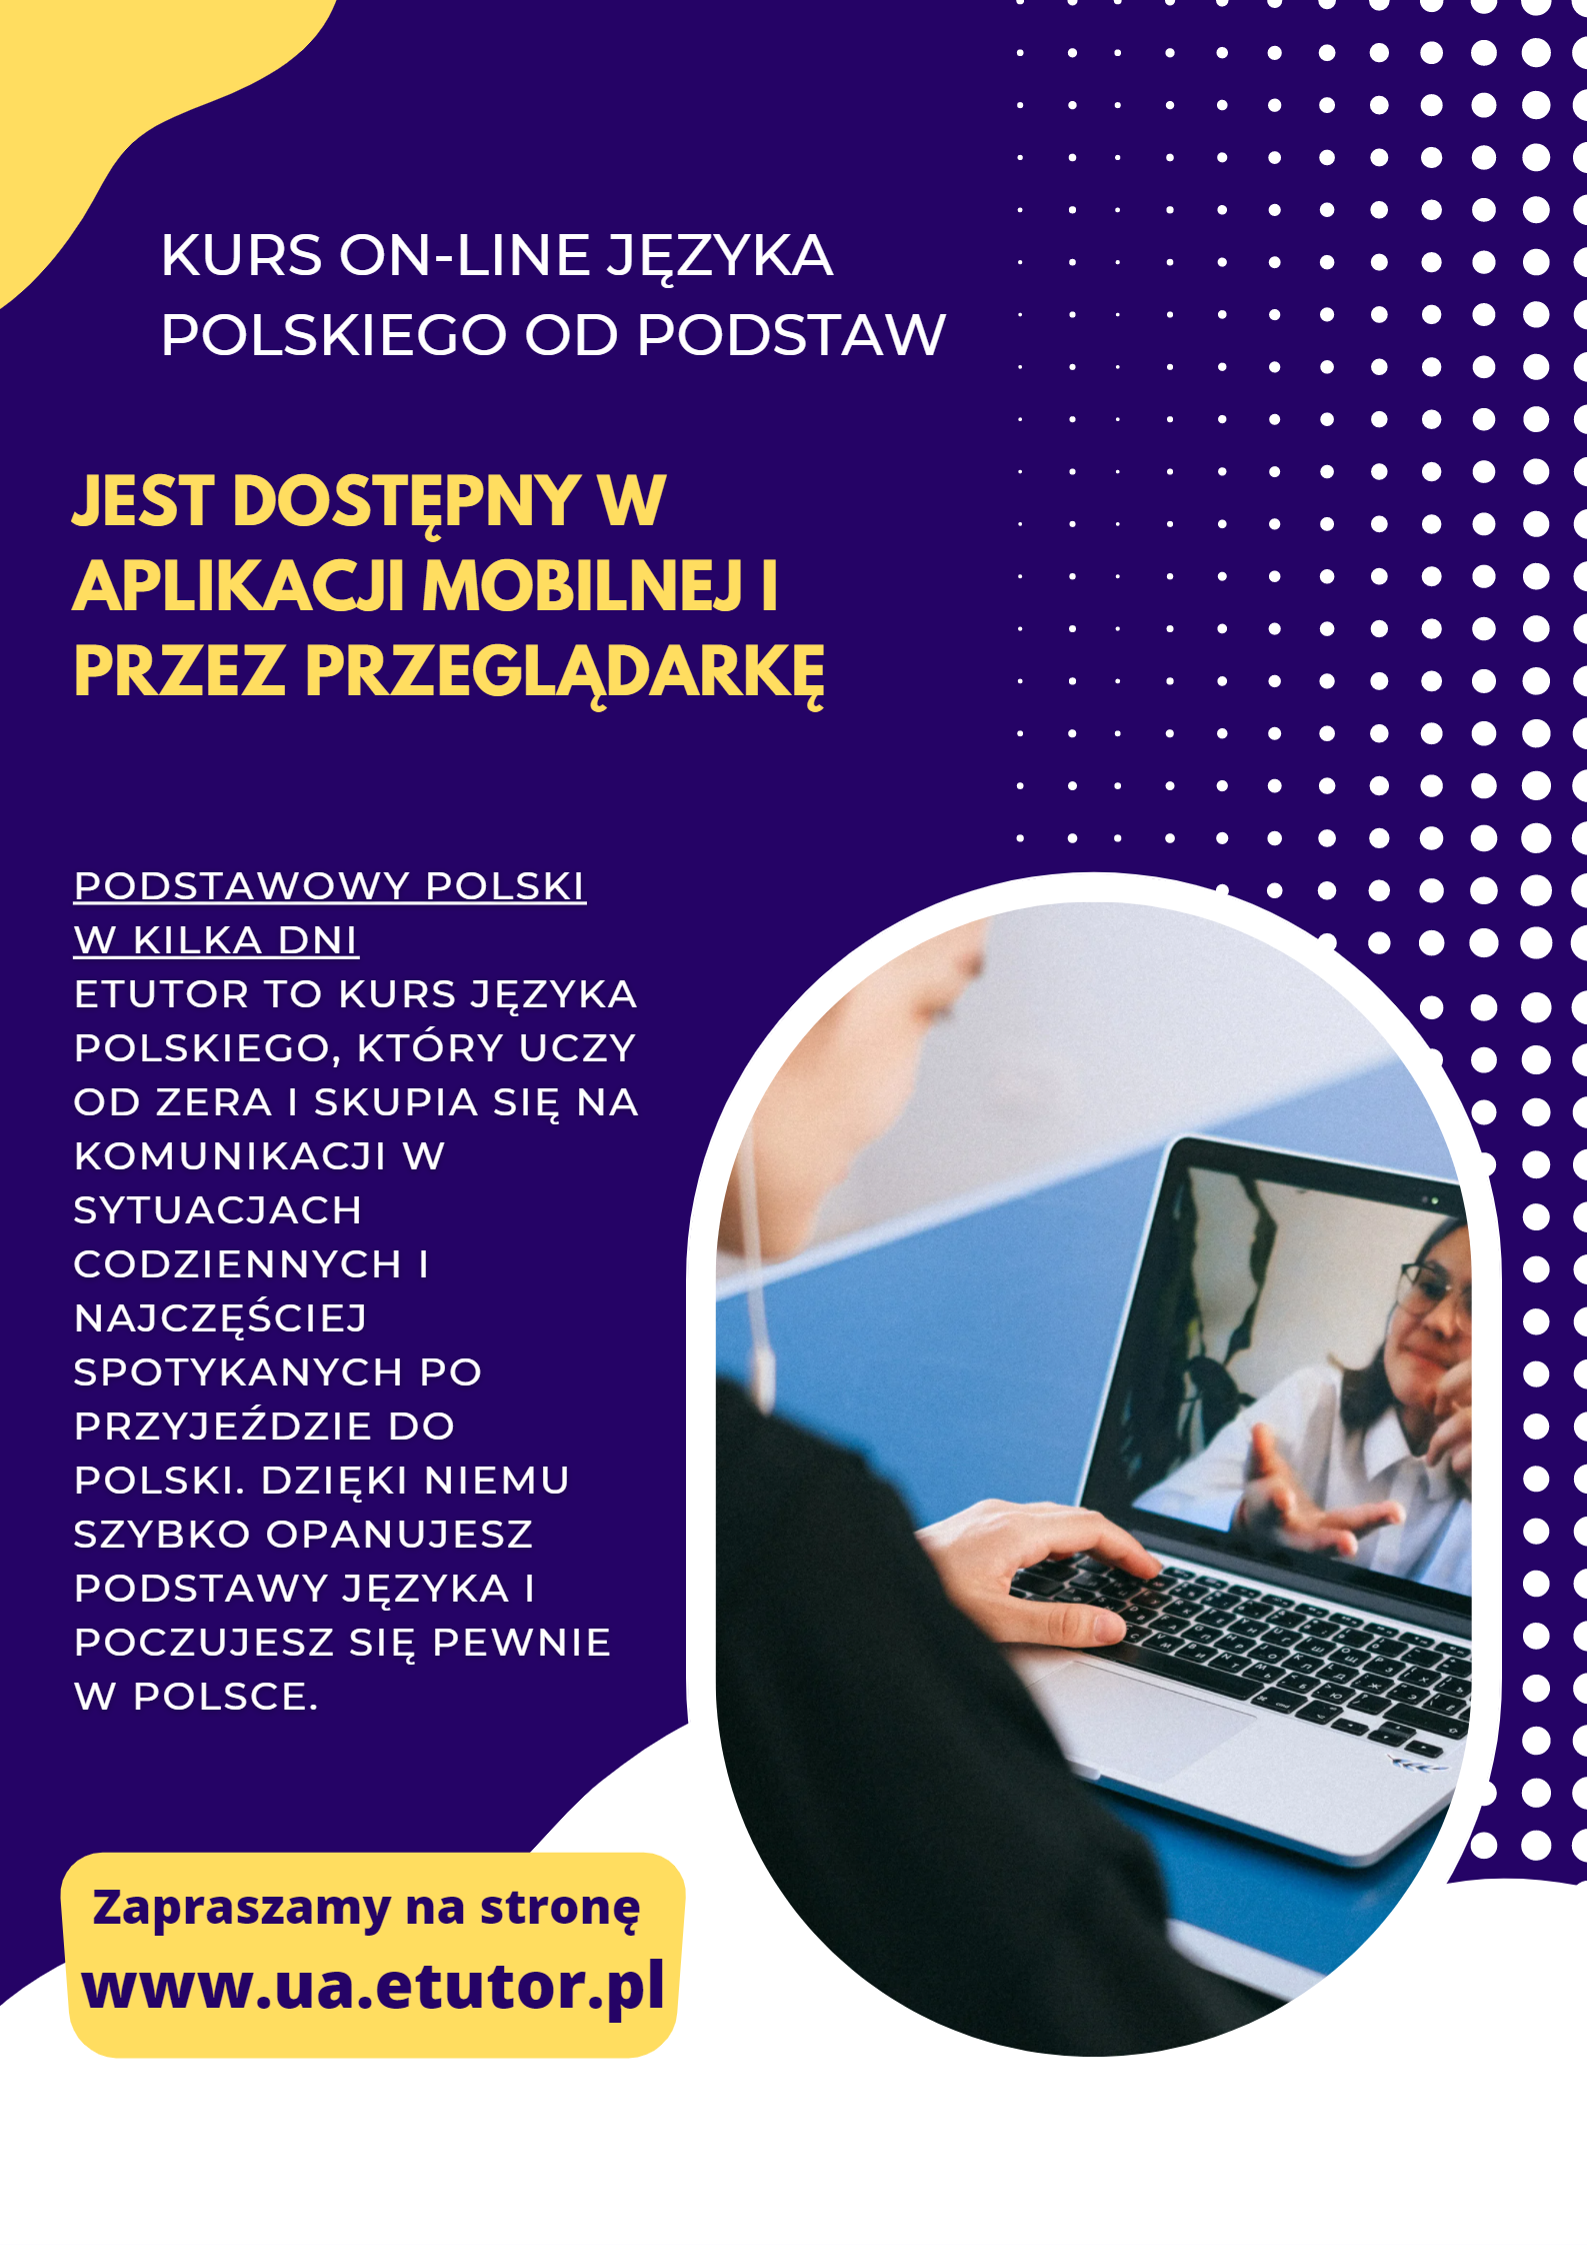 Kurs on-line języka polskiego od podstaw - ulotka w języku polskim